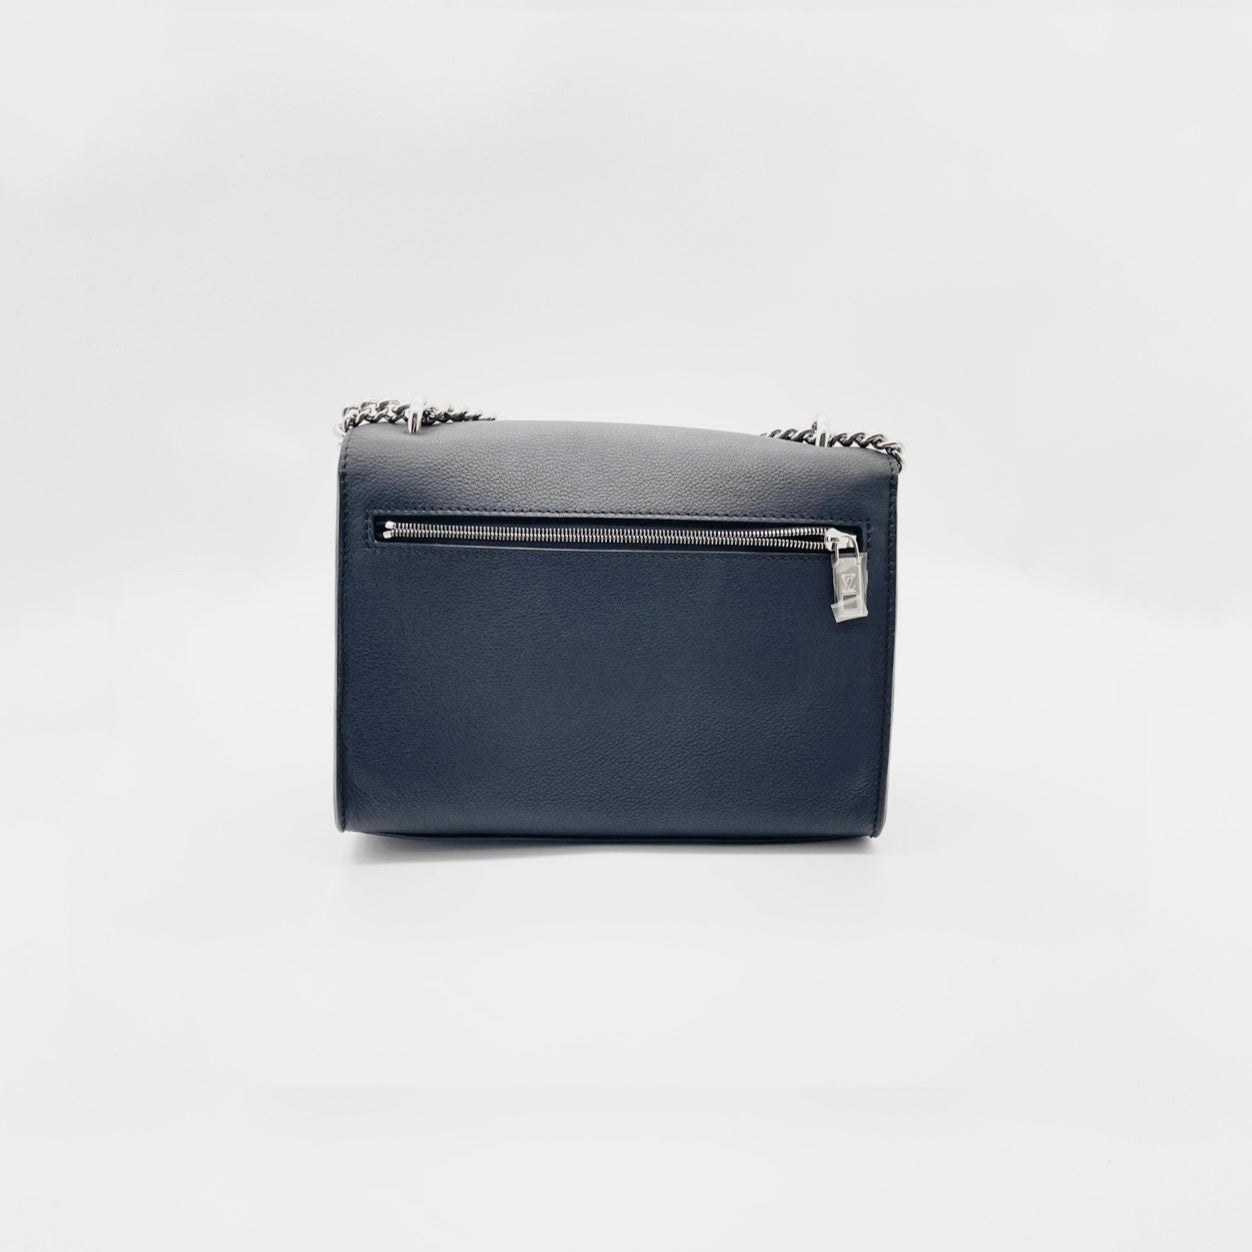 Louis Vuitton, Lockme Chain Bag - BNIB